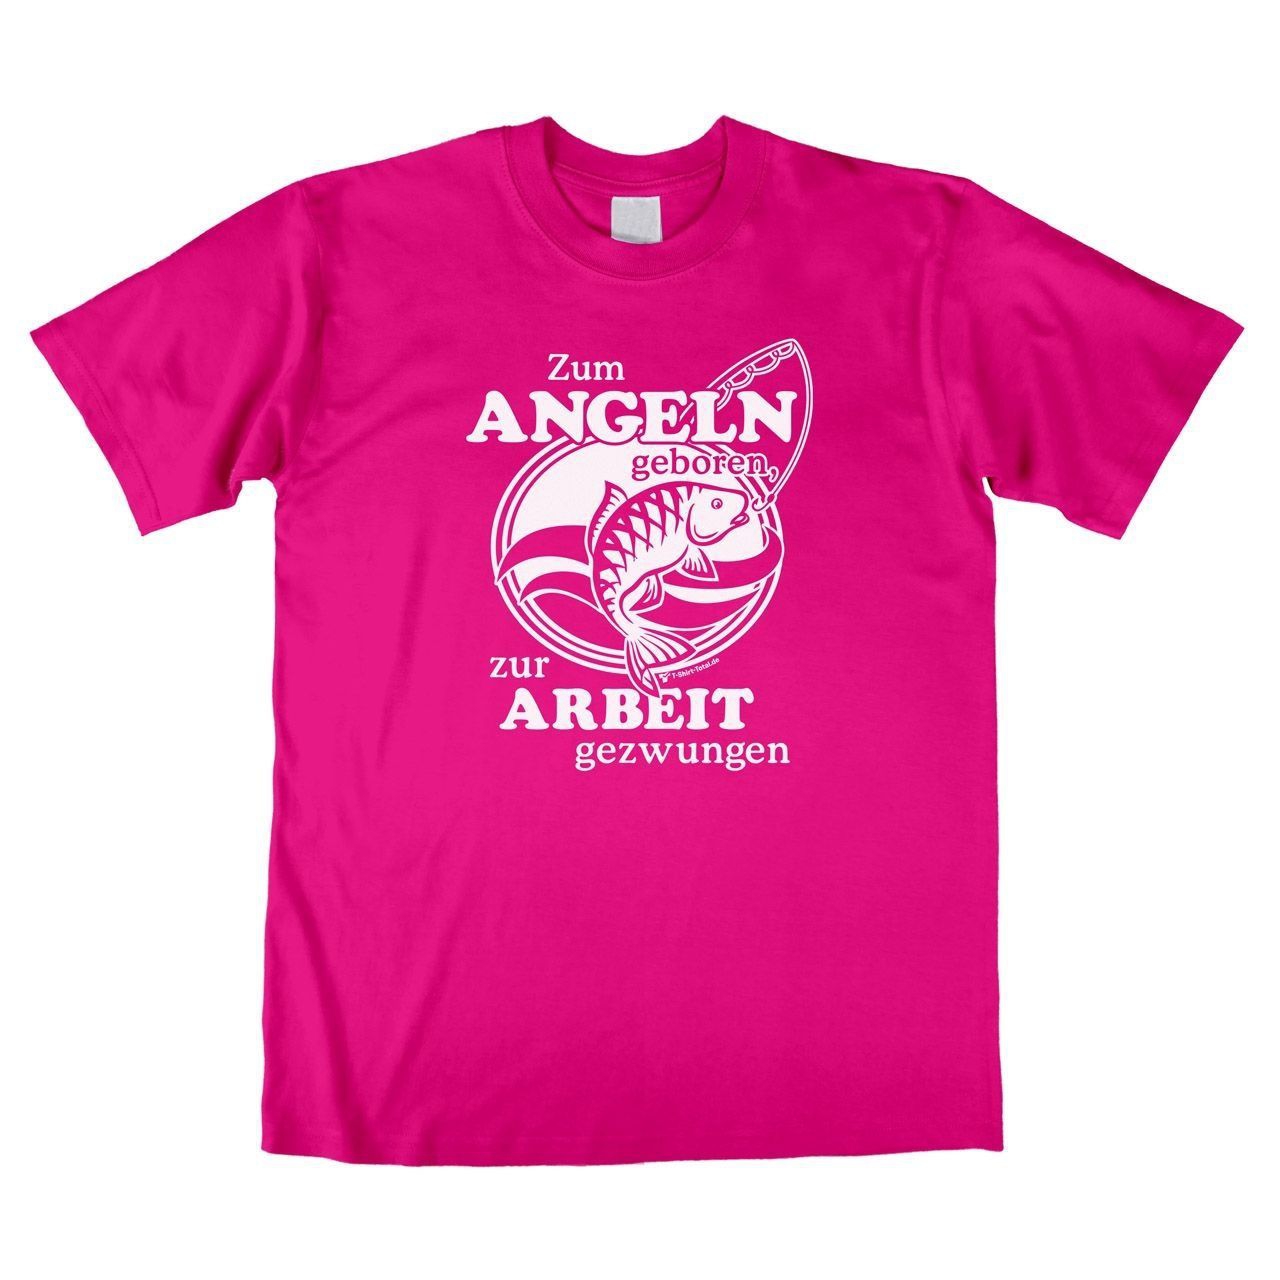 Zum Angeln geboren Unisex T-Shirt pink Large